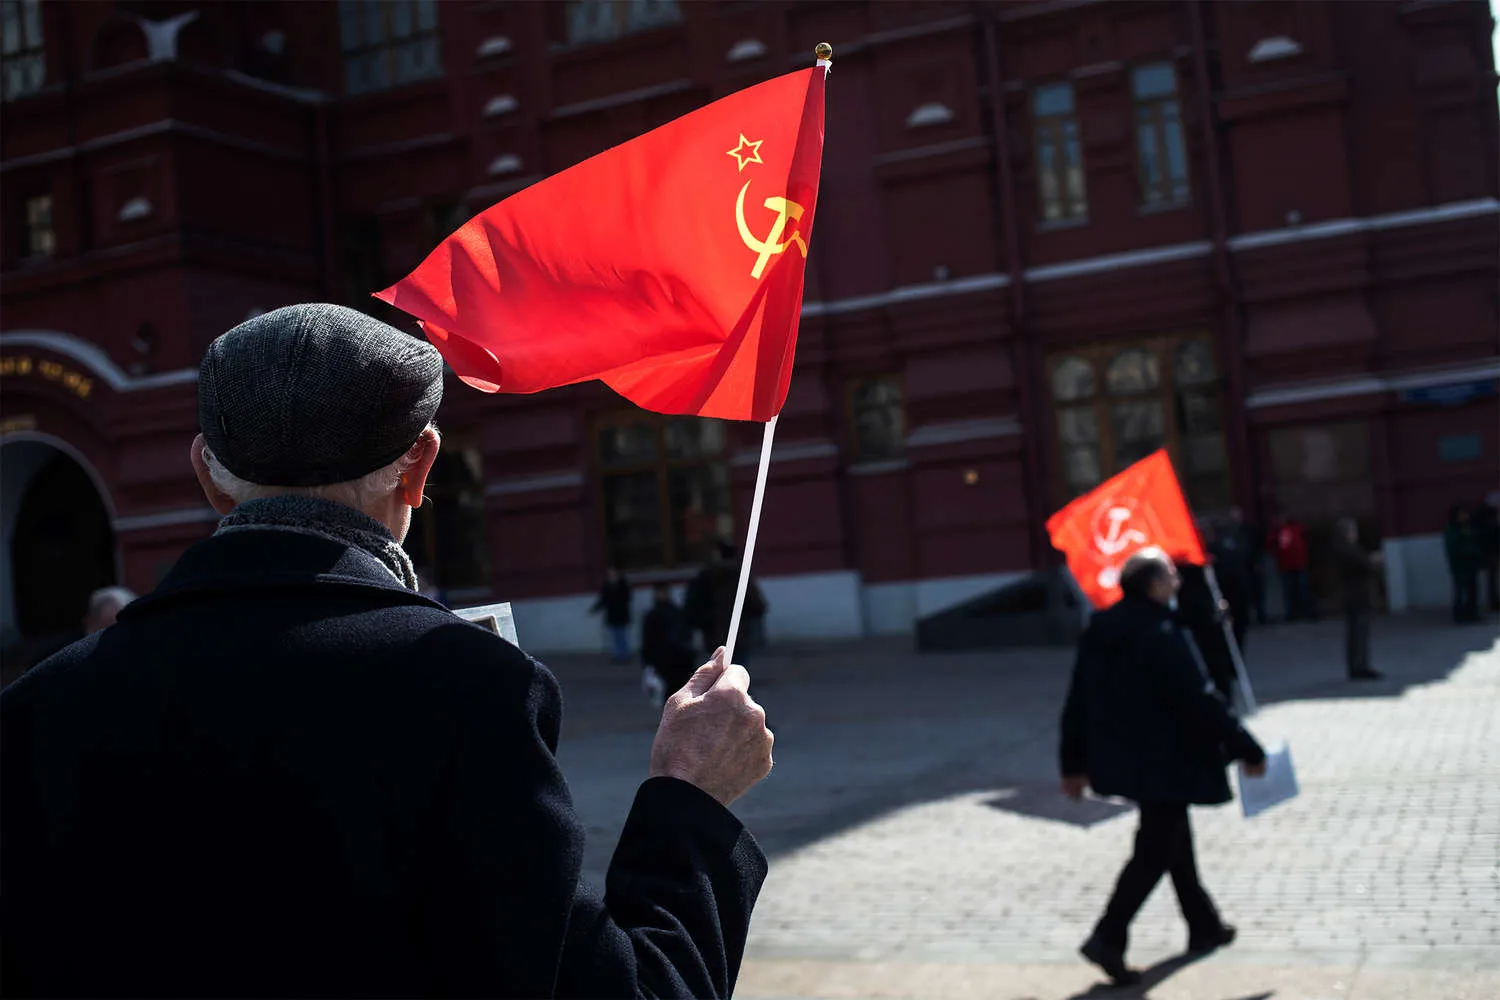 Флаг россии будет красным